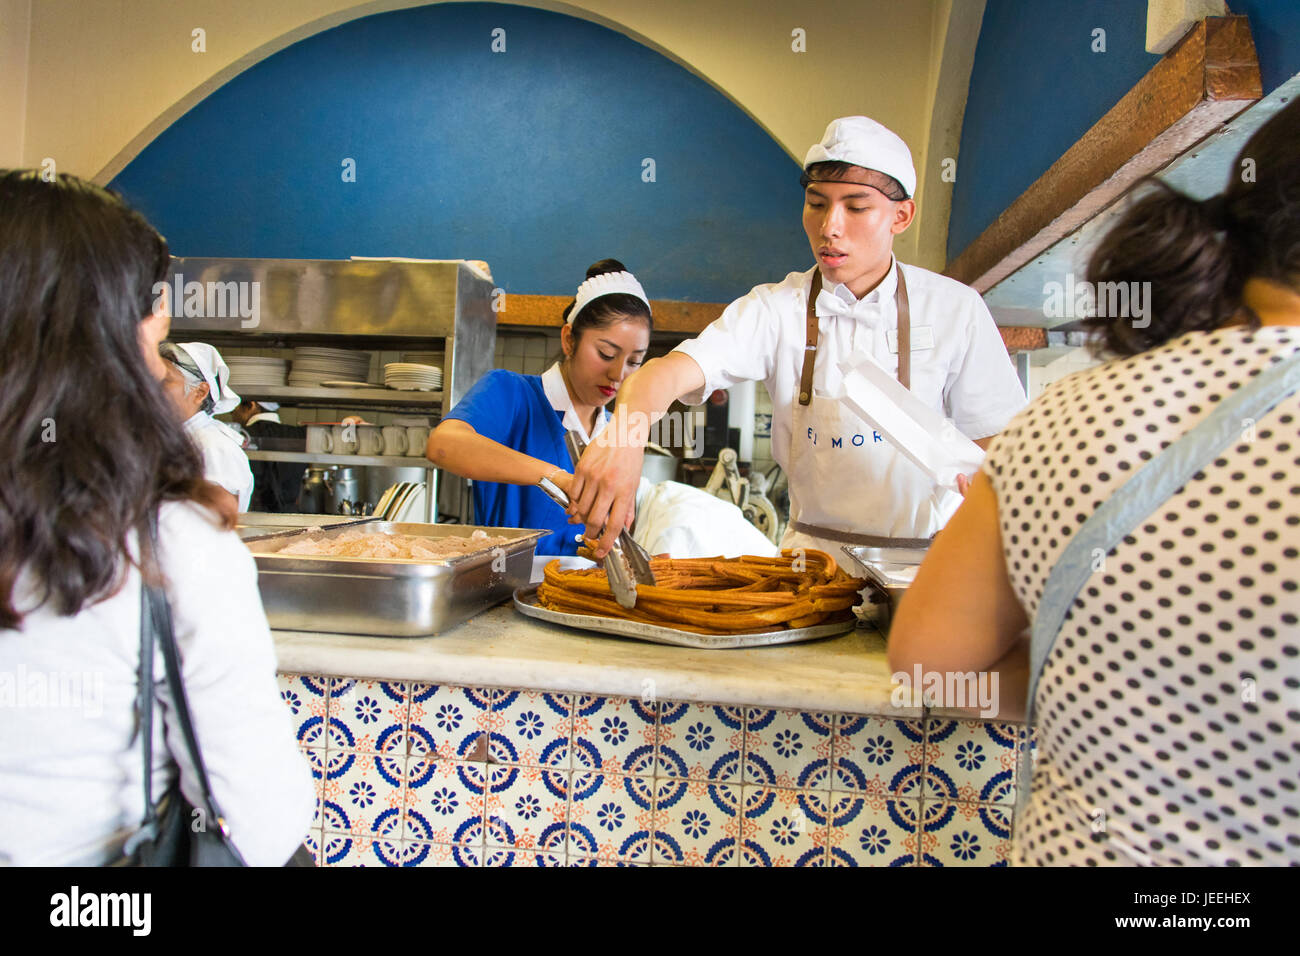 Churros im El Moro Cafe, Mexiko-Stadt Mexiko-Stadt, Mexiko Stockfoto